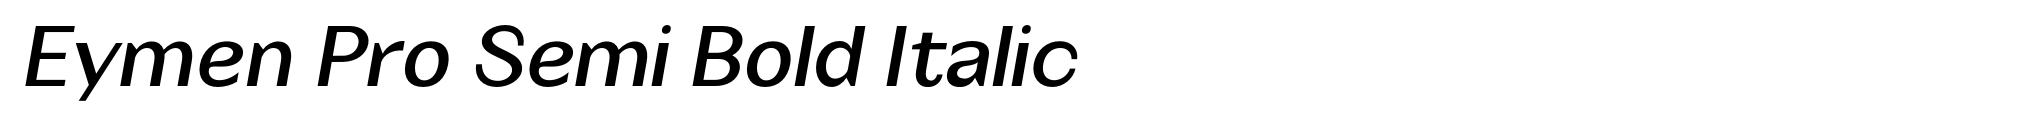 Eymen Pro Semi Bold Italic image